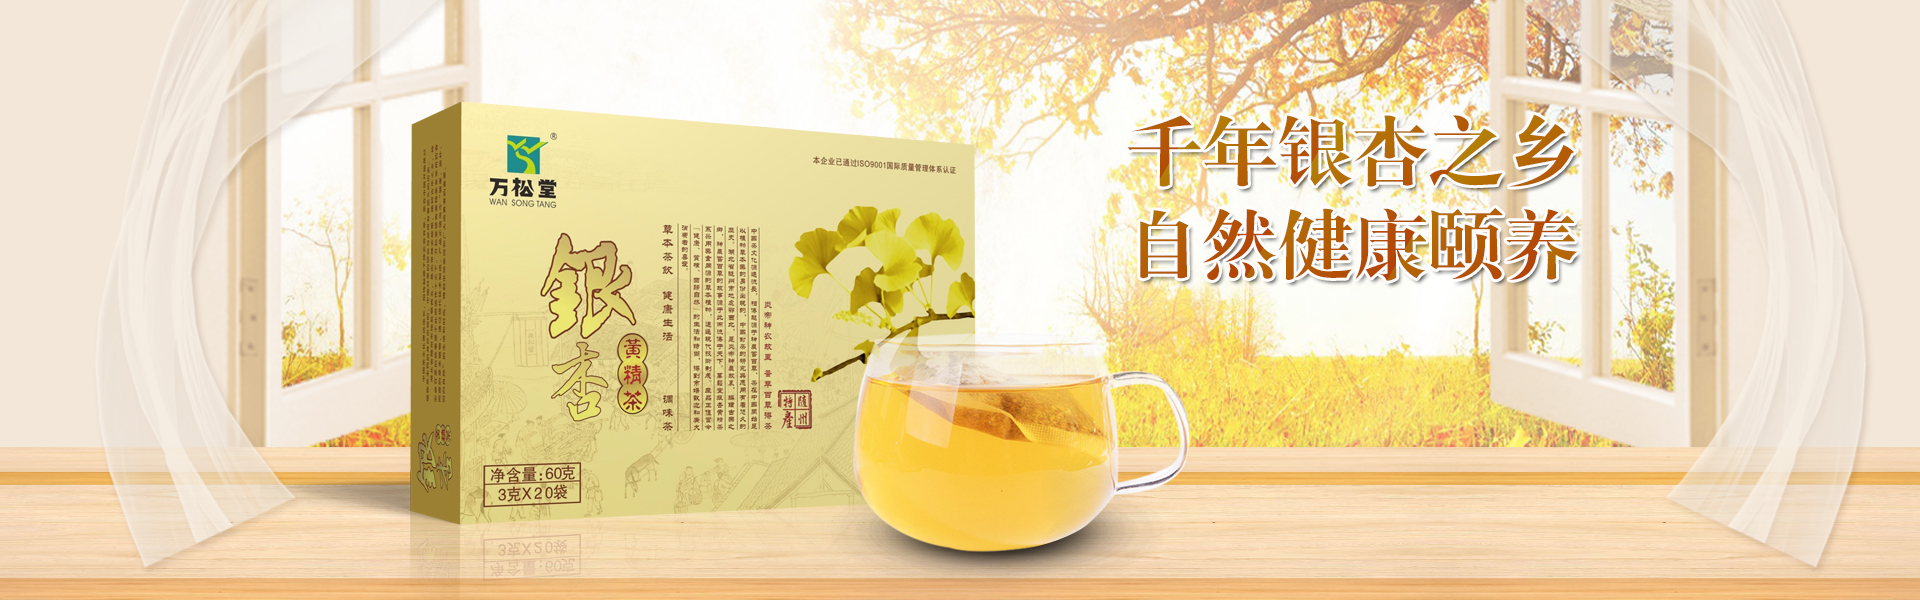 银杏黄精茶